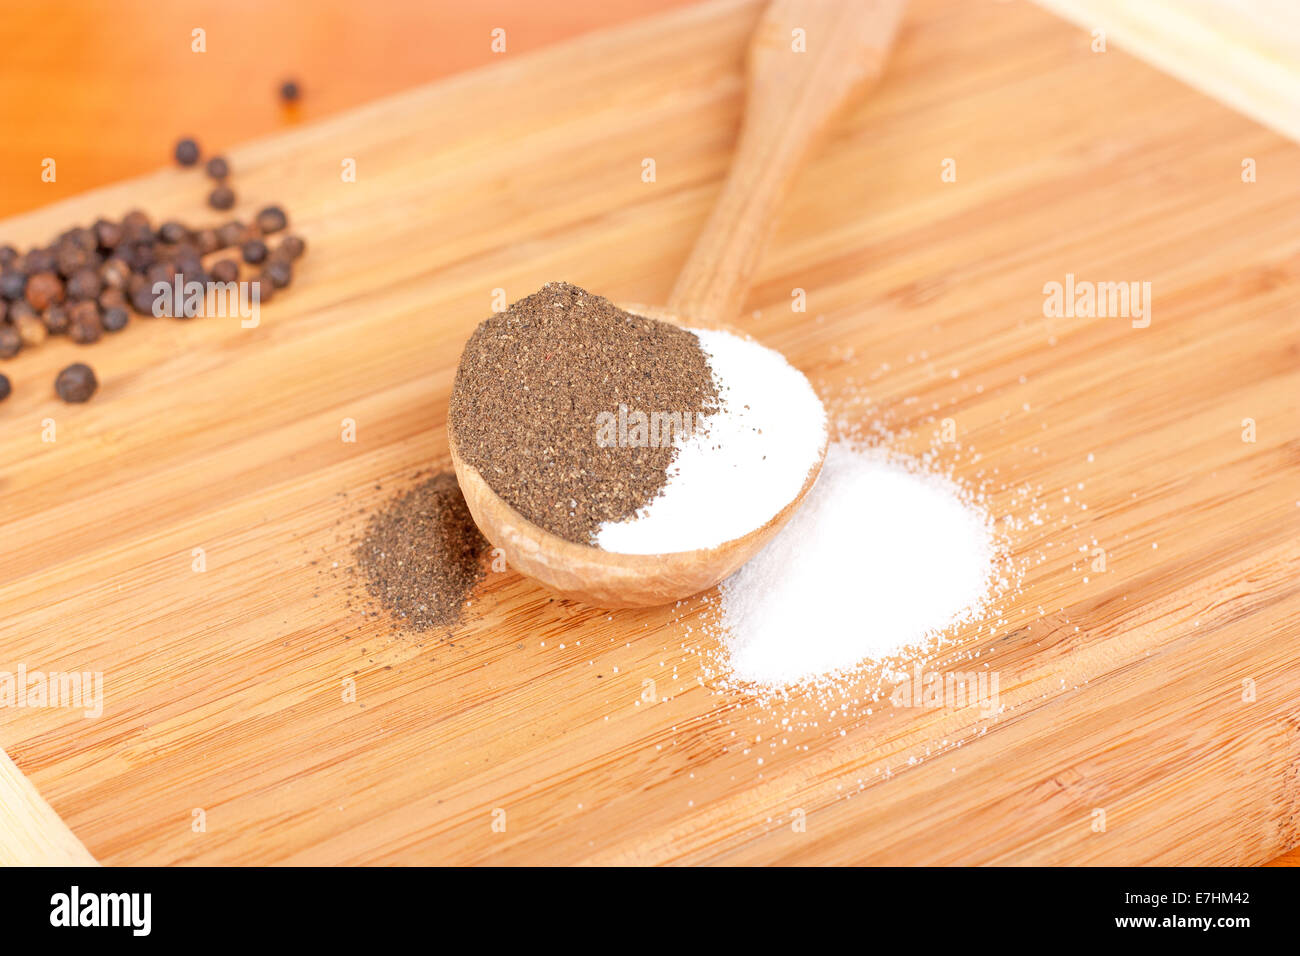 Le sel et le poivre sur la table cuillère en bois Banque D'Images